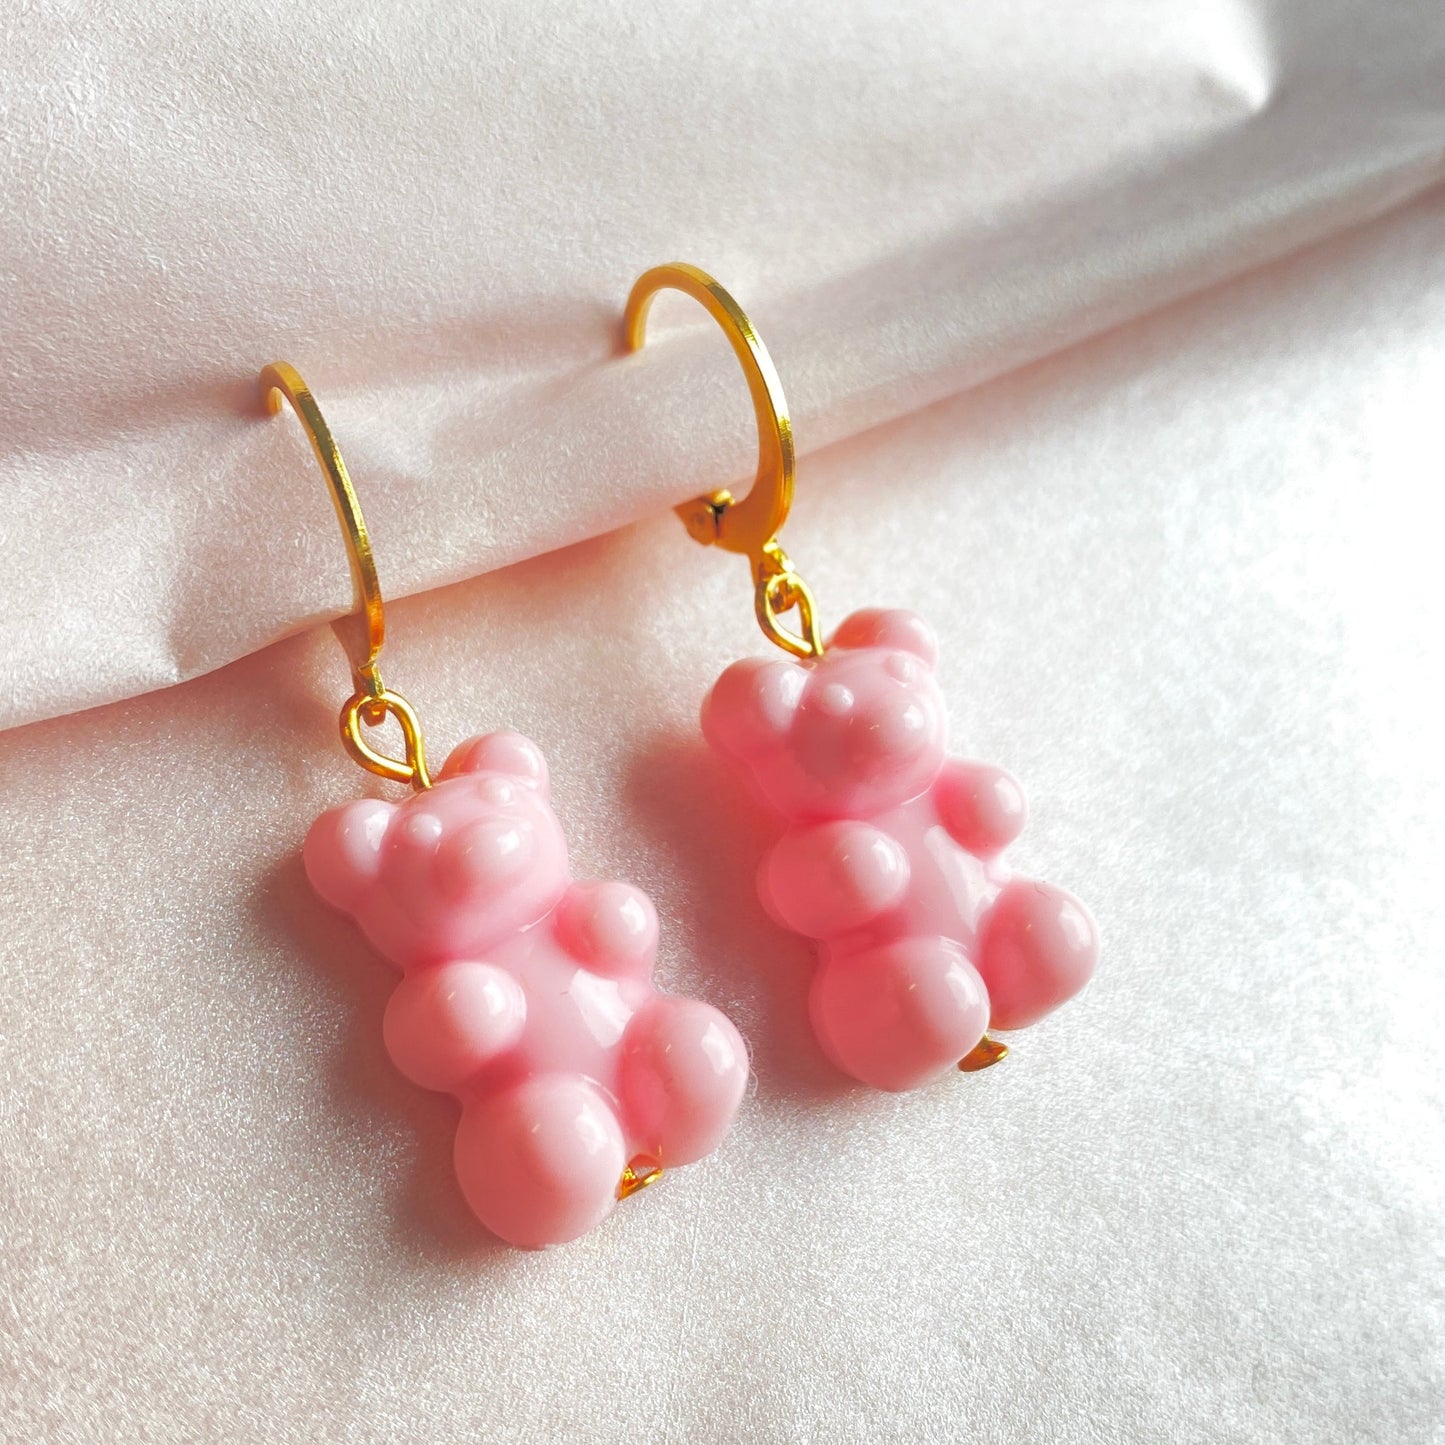 Gummy bear earrings // pink // stainless steel earrings